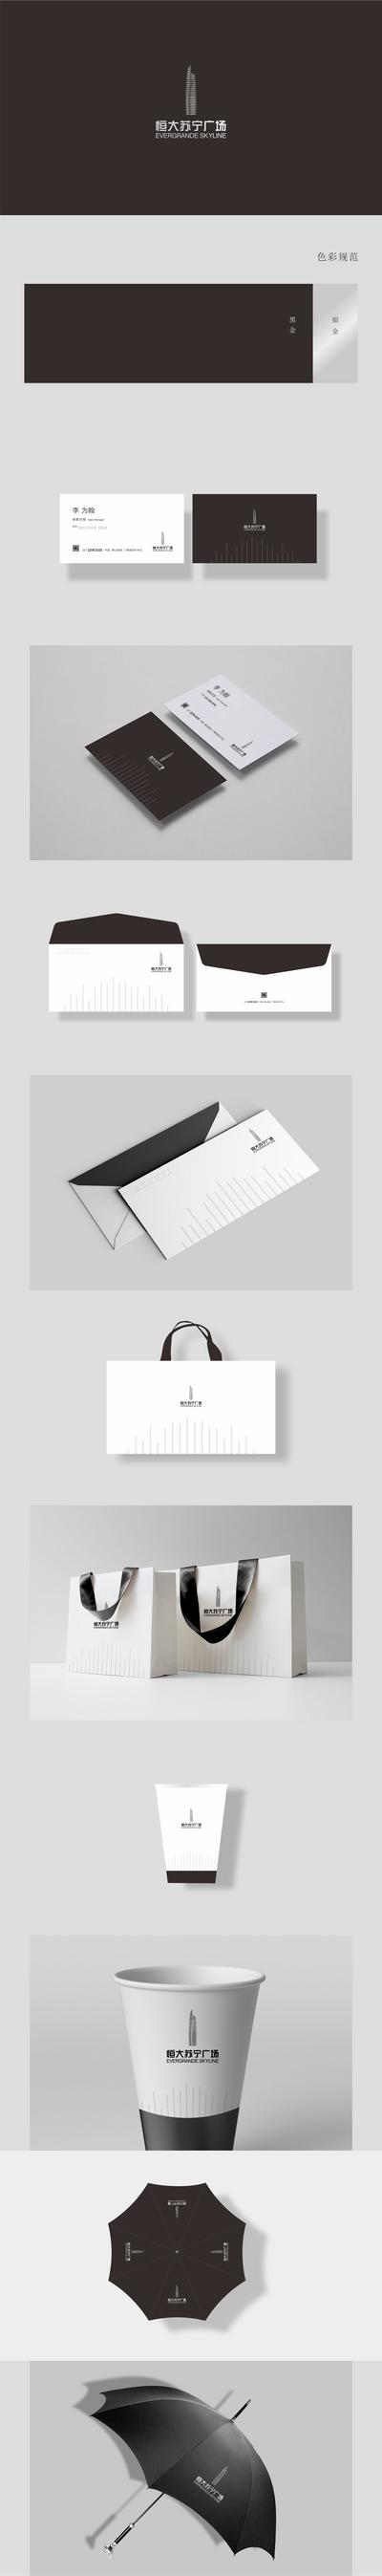 南门网 VI 提案 房地产 商业综合体 LOGO设计  物料 信封 手提袋 纸杯 雨伞